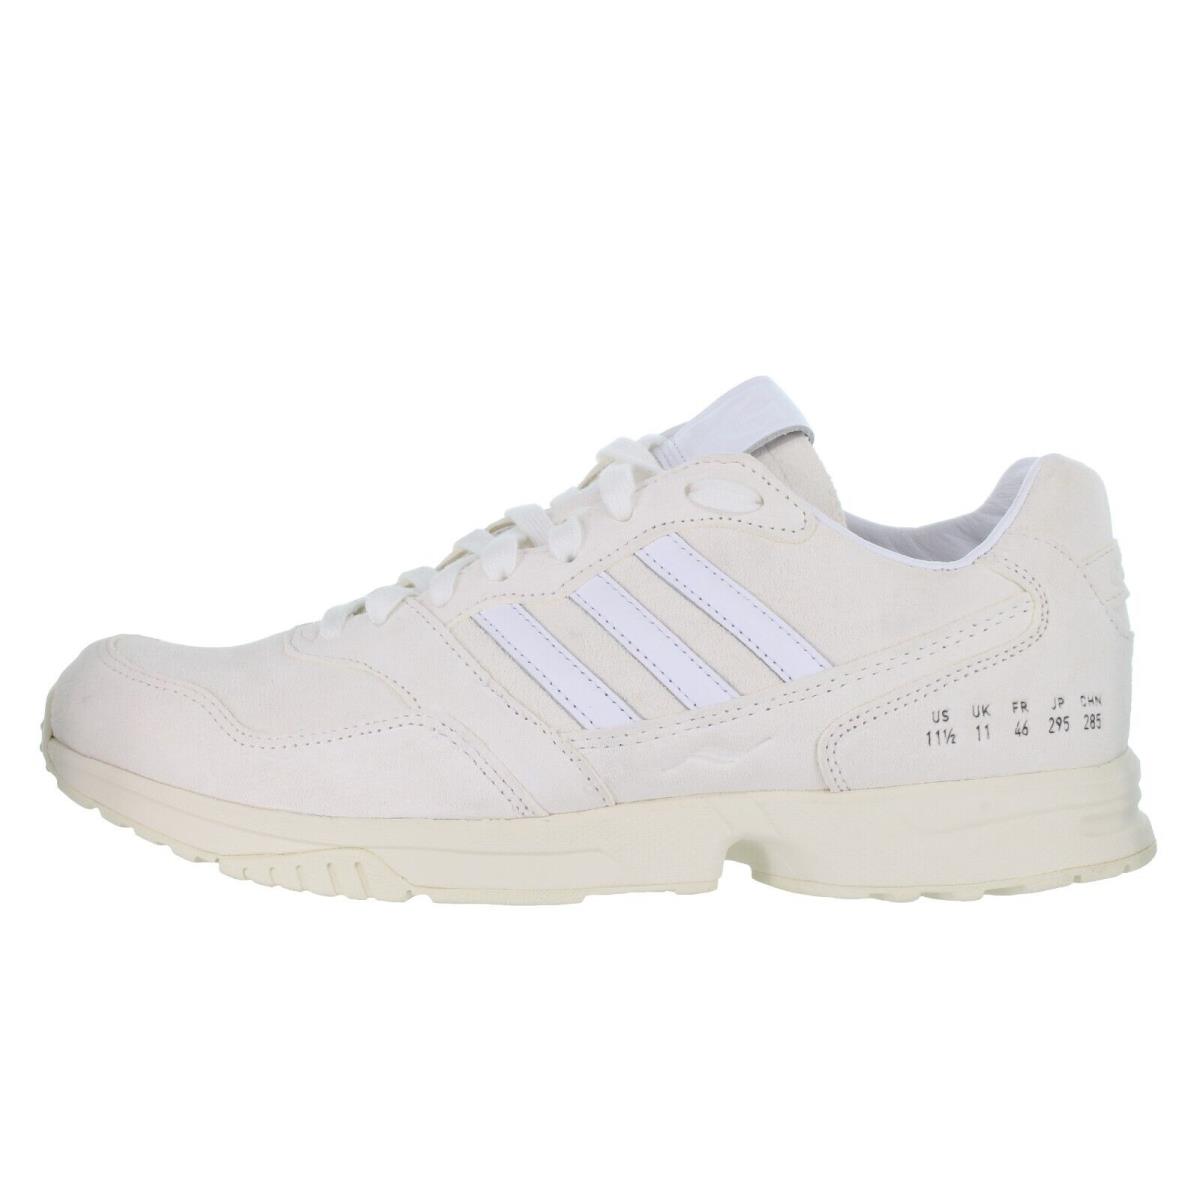 Adidas Men`s Originals ZX 1000 C White Casual Shoes Size 11.5 - 12